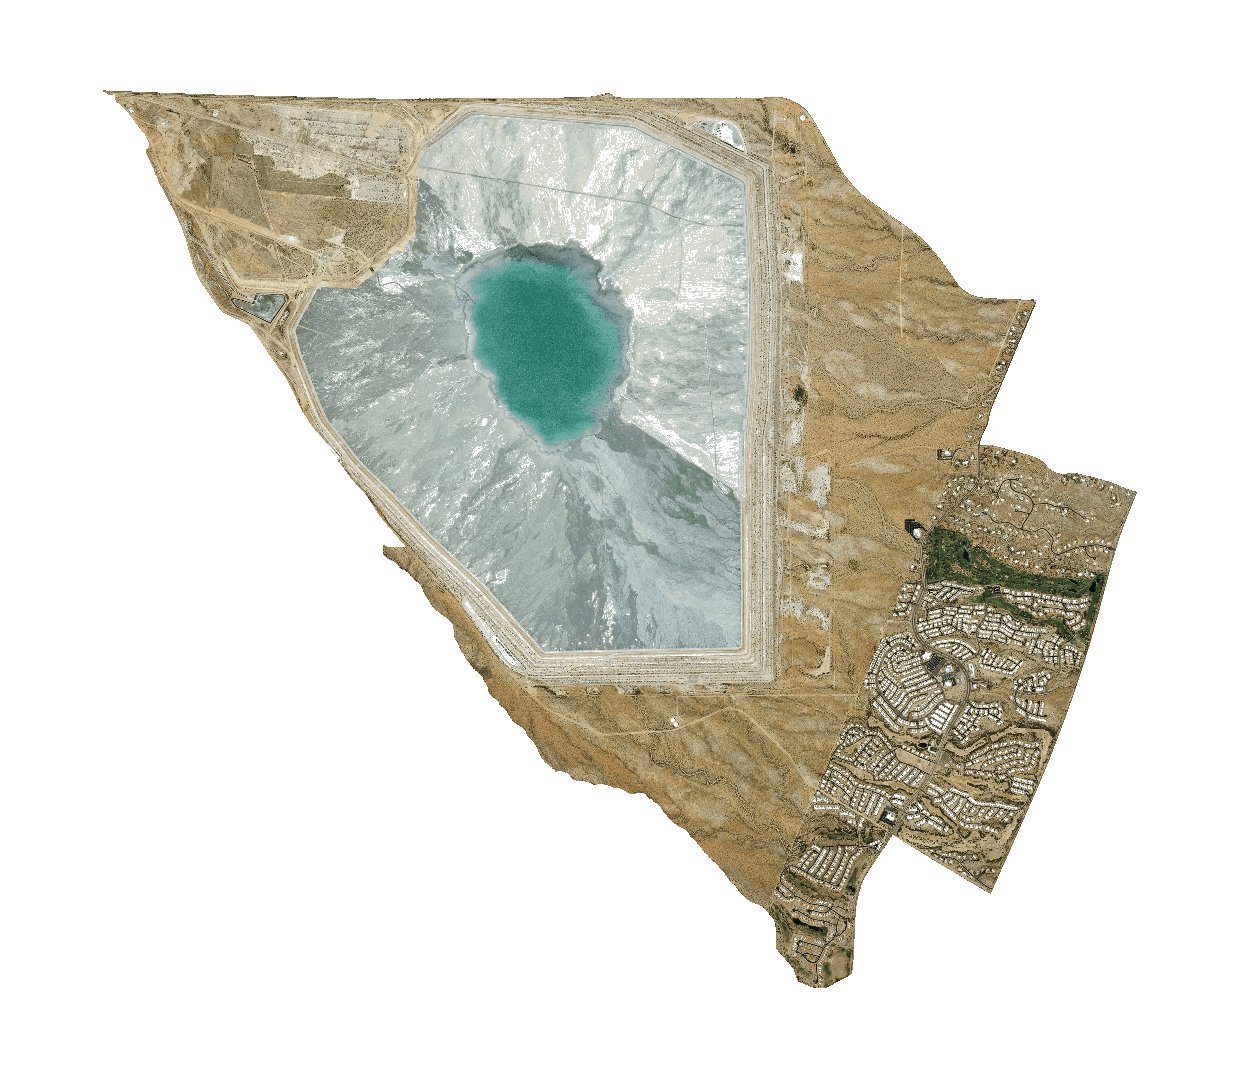 亚利桑那州皮马县人口普查区43.28的卫星照片